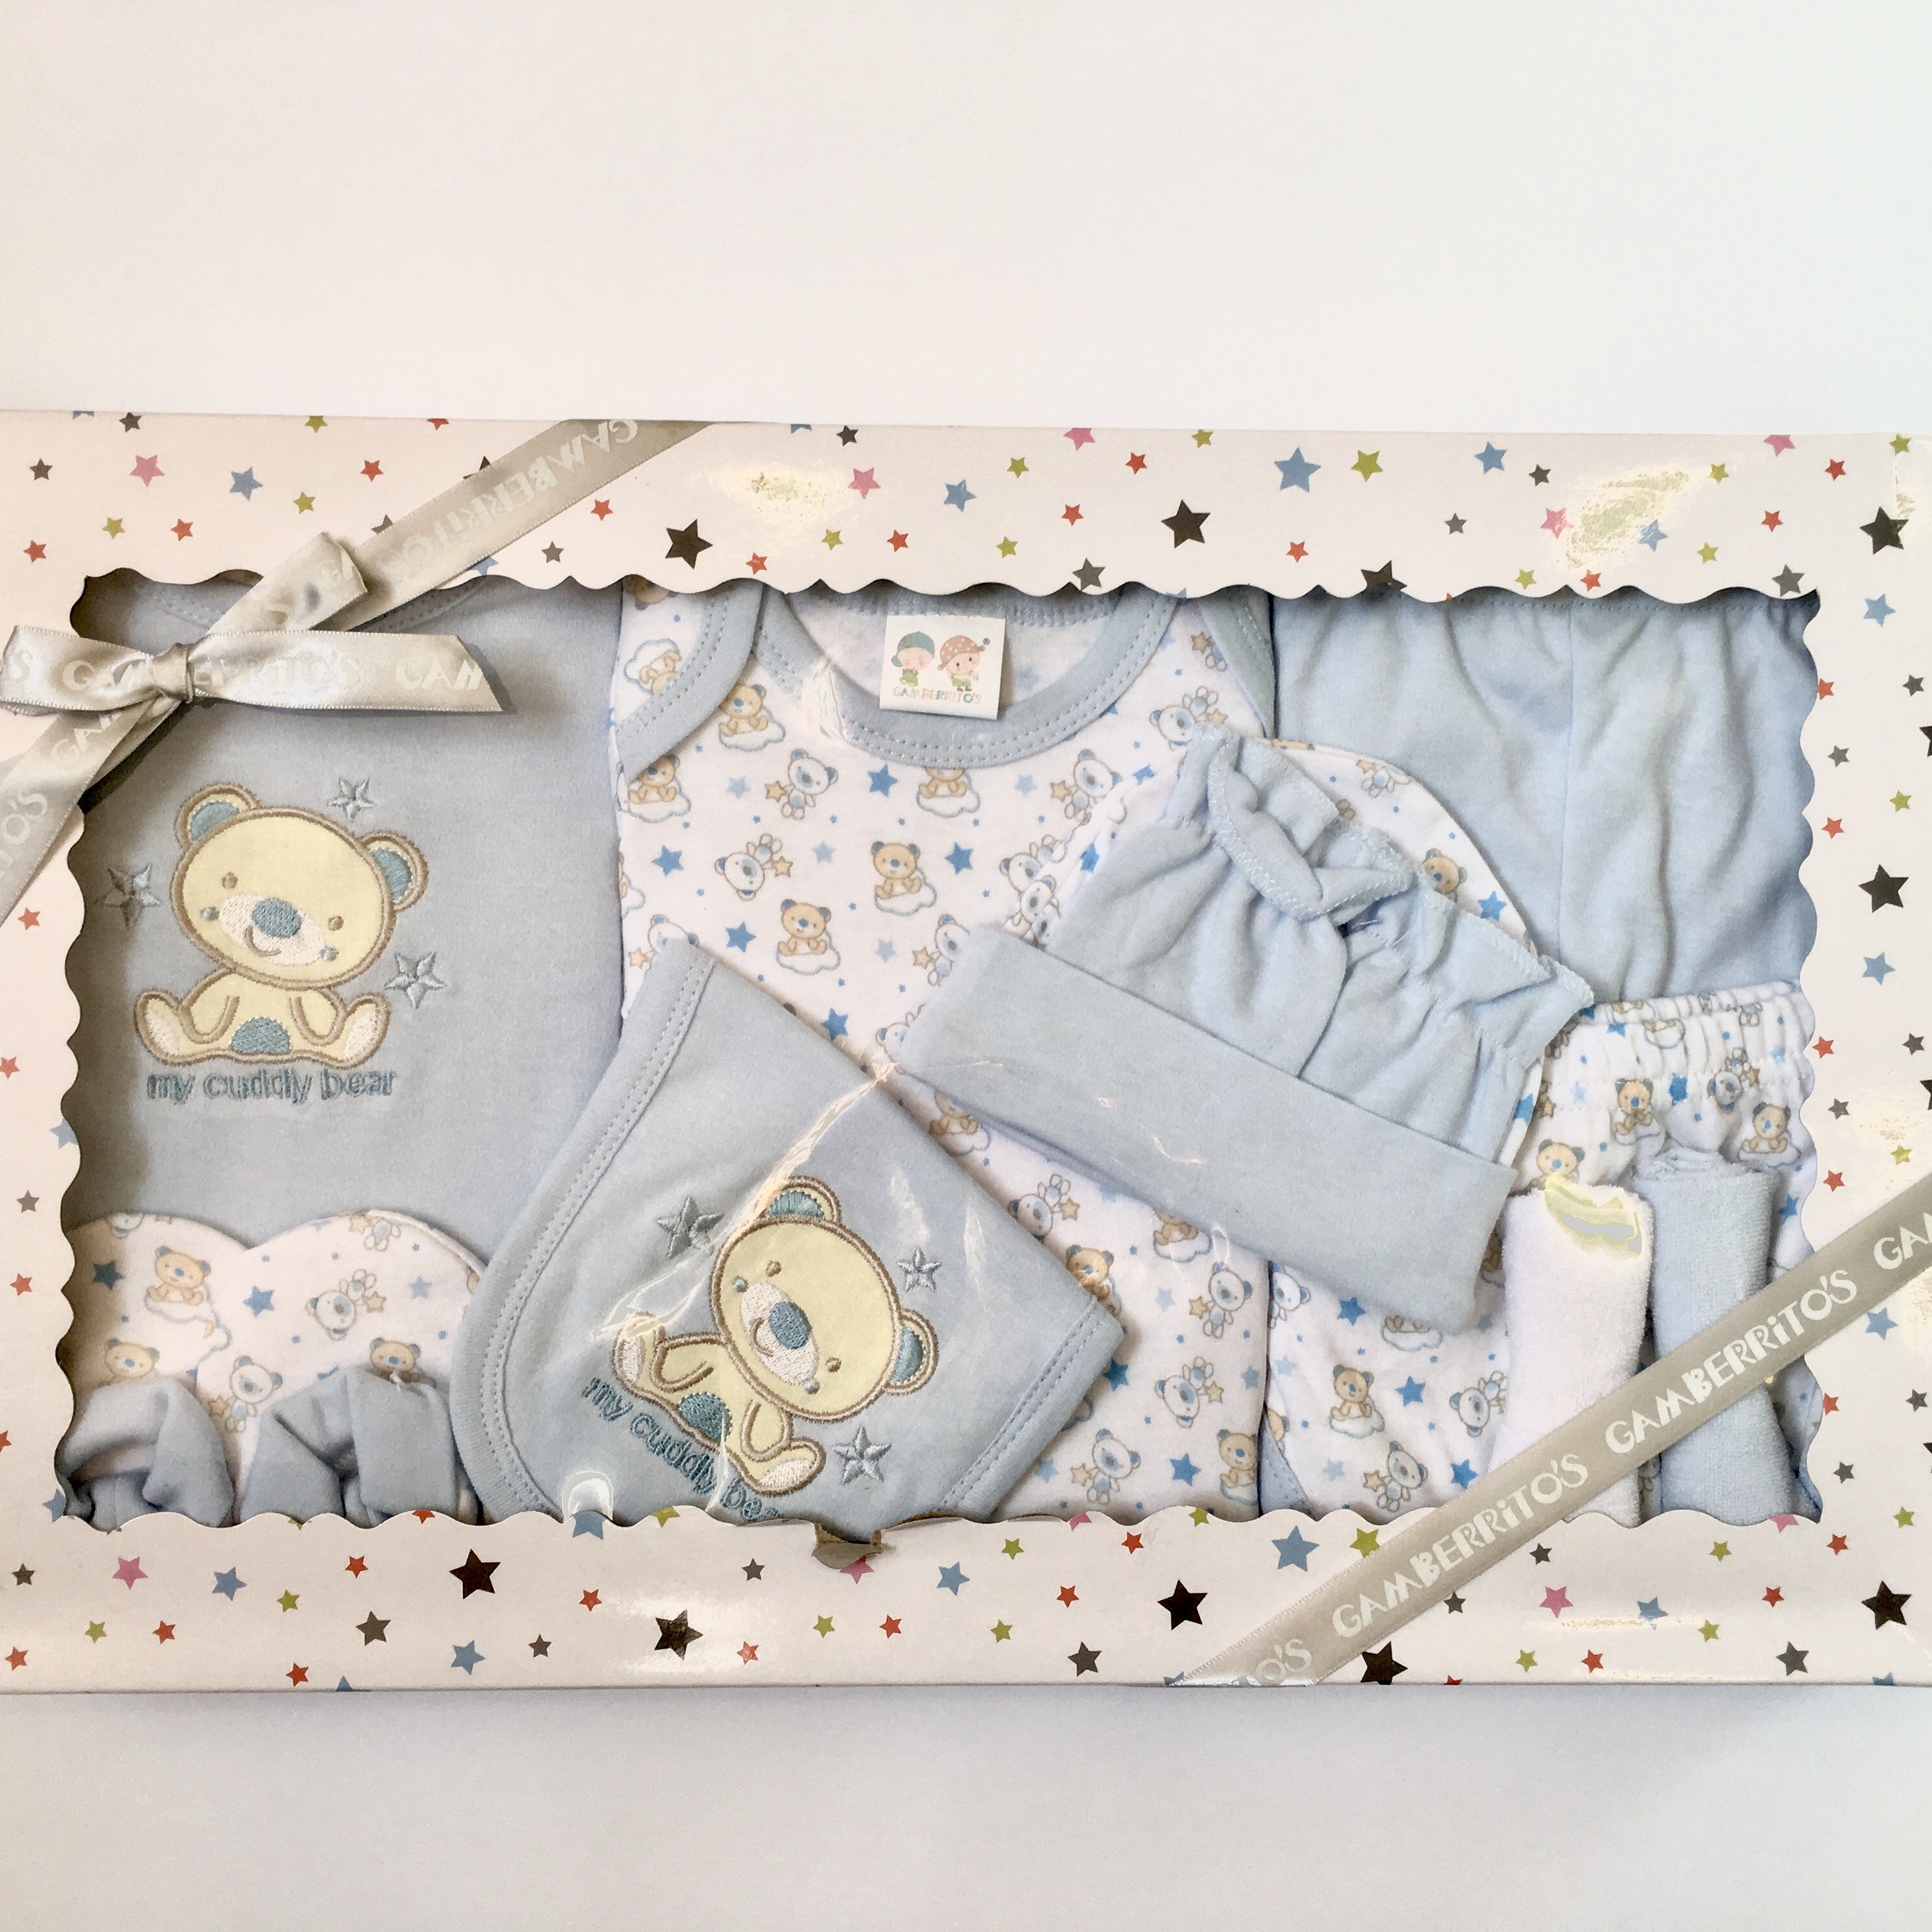 Подарочный комплект для новорожденного. Комплект для новорожденных 6 пр. арт.p6-km003-tr. Подарочные комплекты для новорожденных. Подарочный набор для младенца.